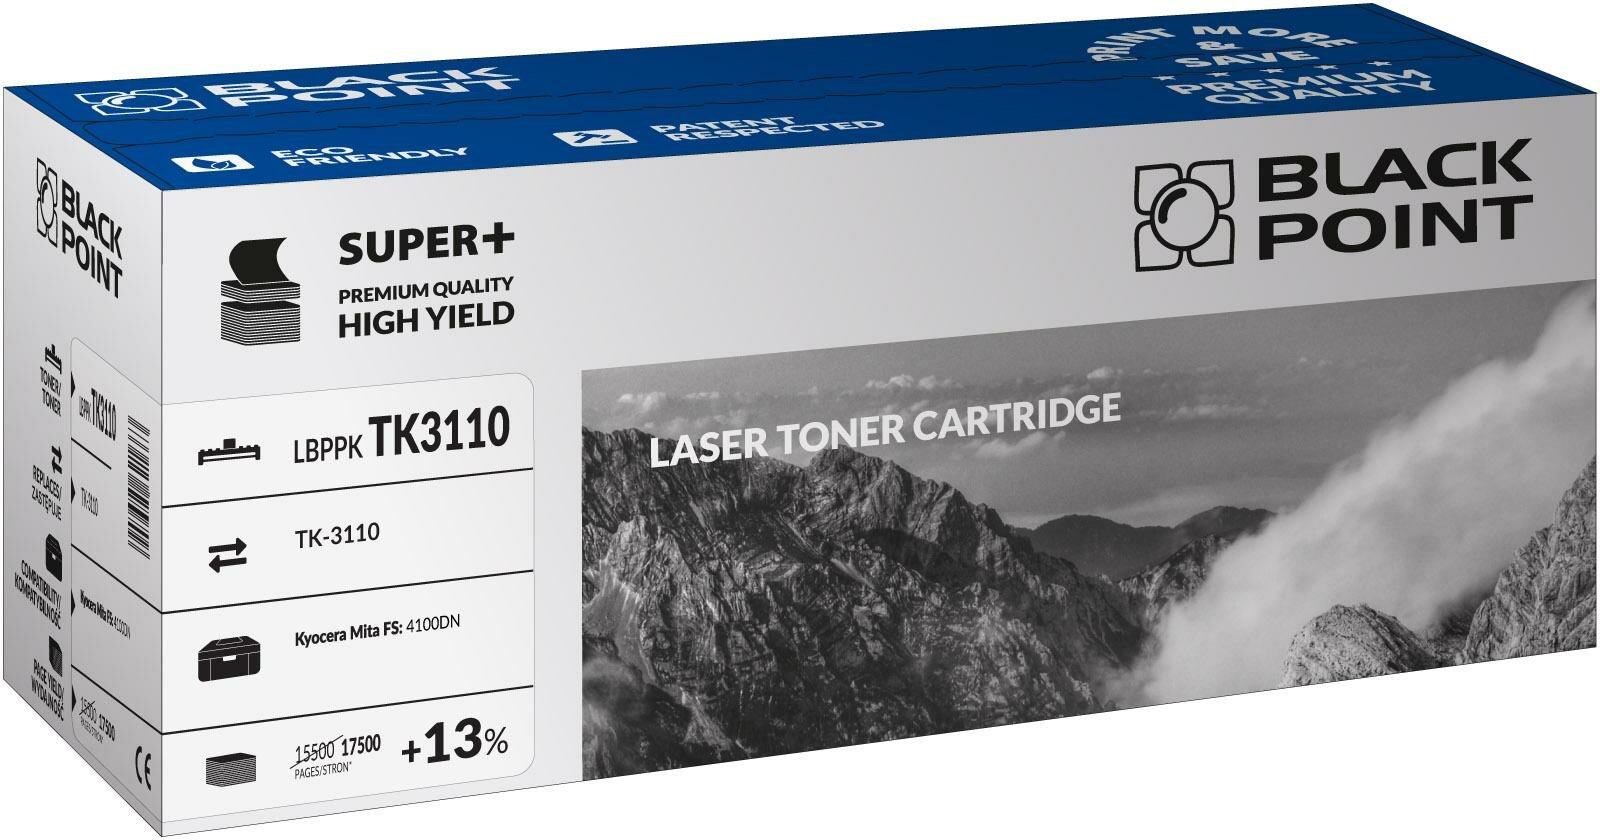 Toner laserowy Black Point Super Plus LBPPKTK3110 widok pod kątem na opakowanie